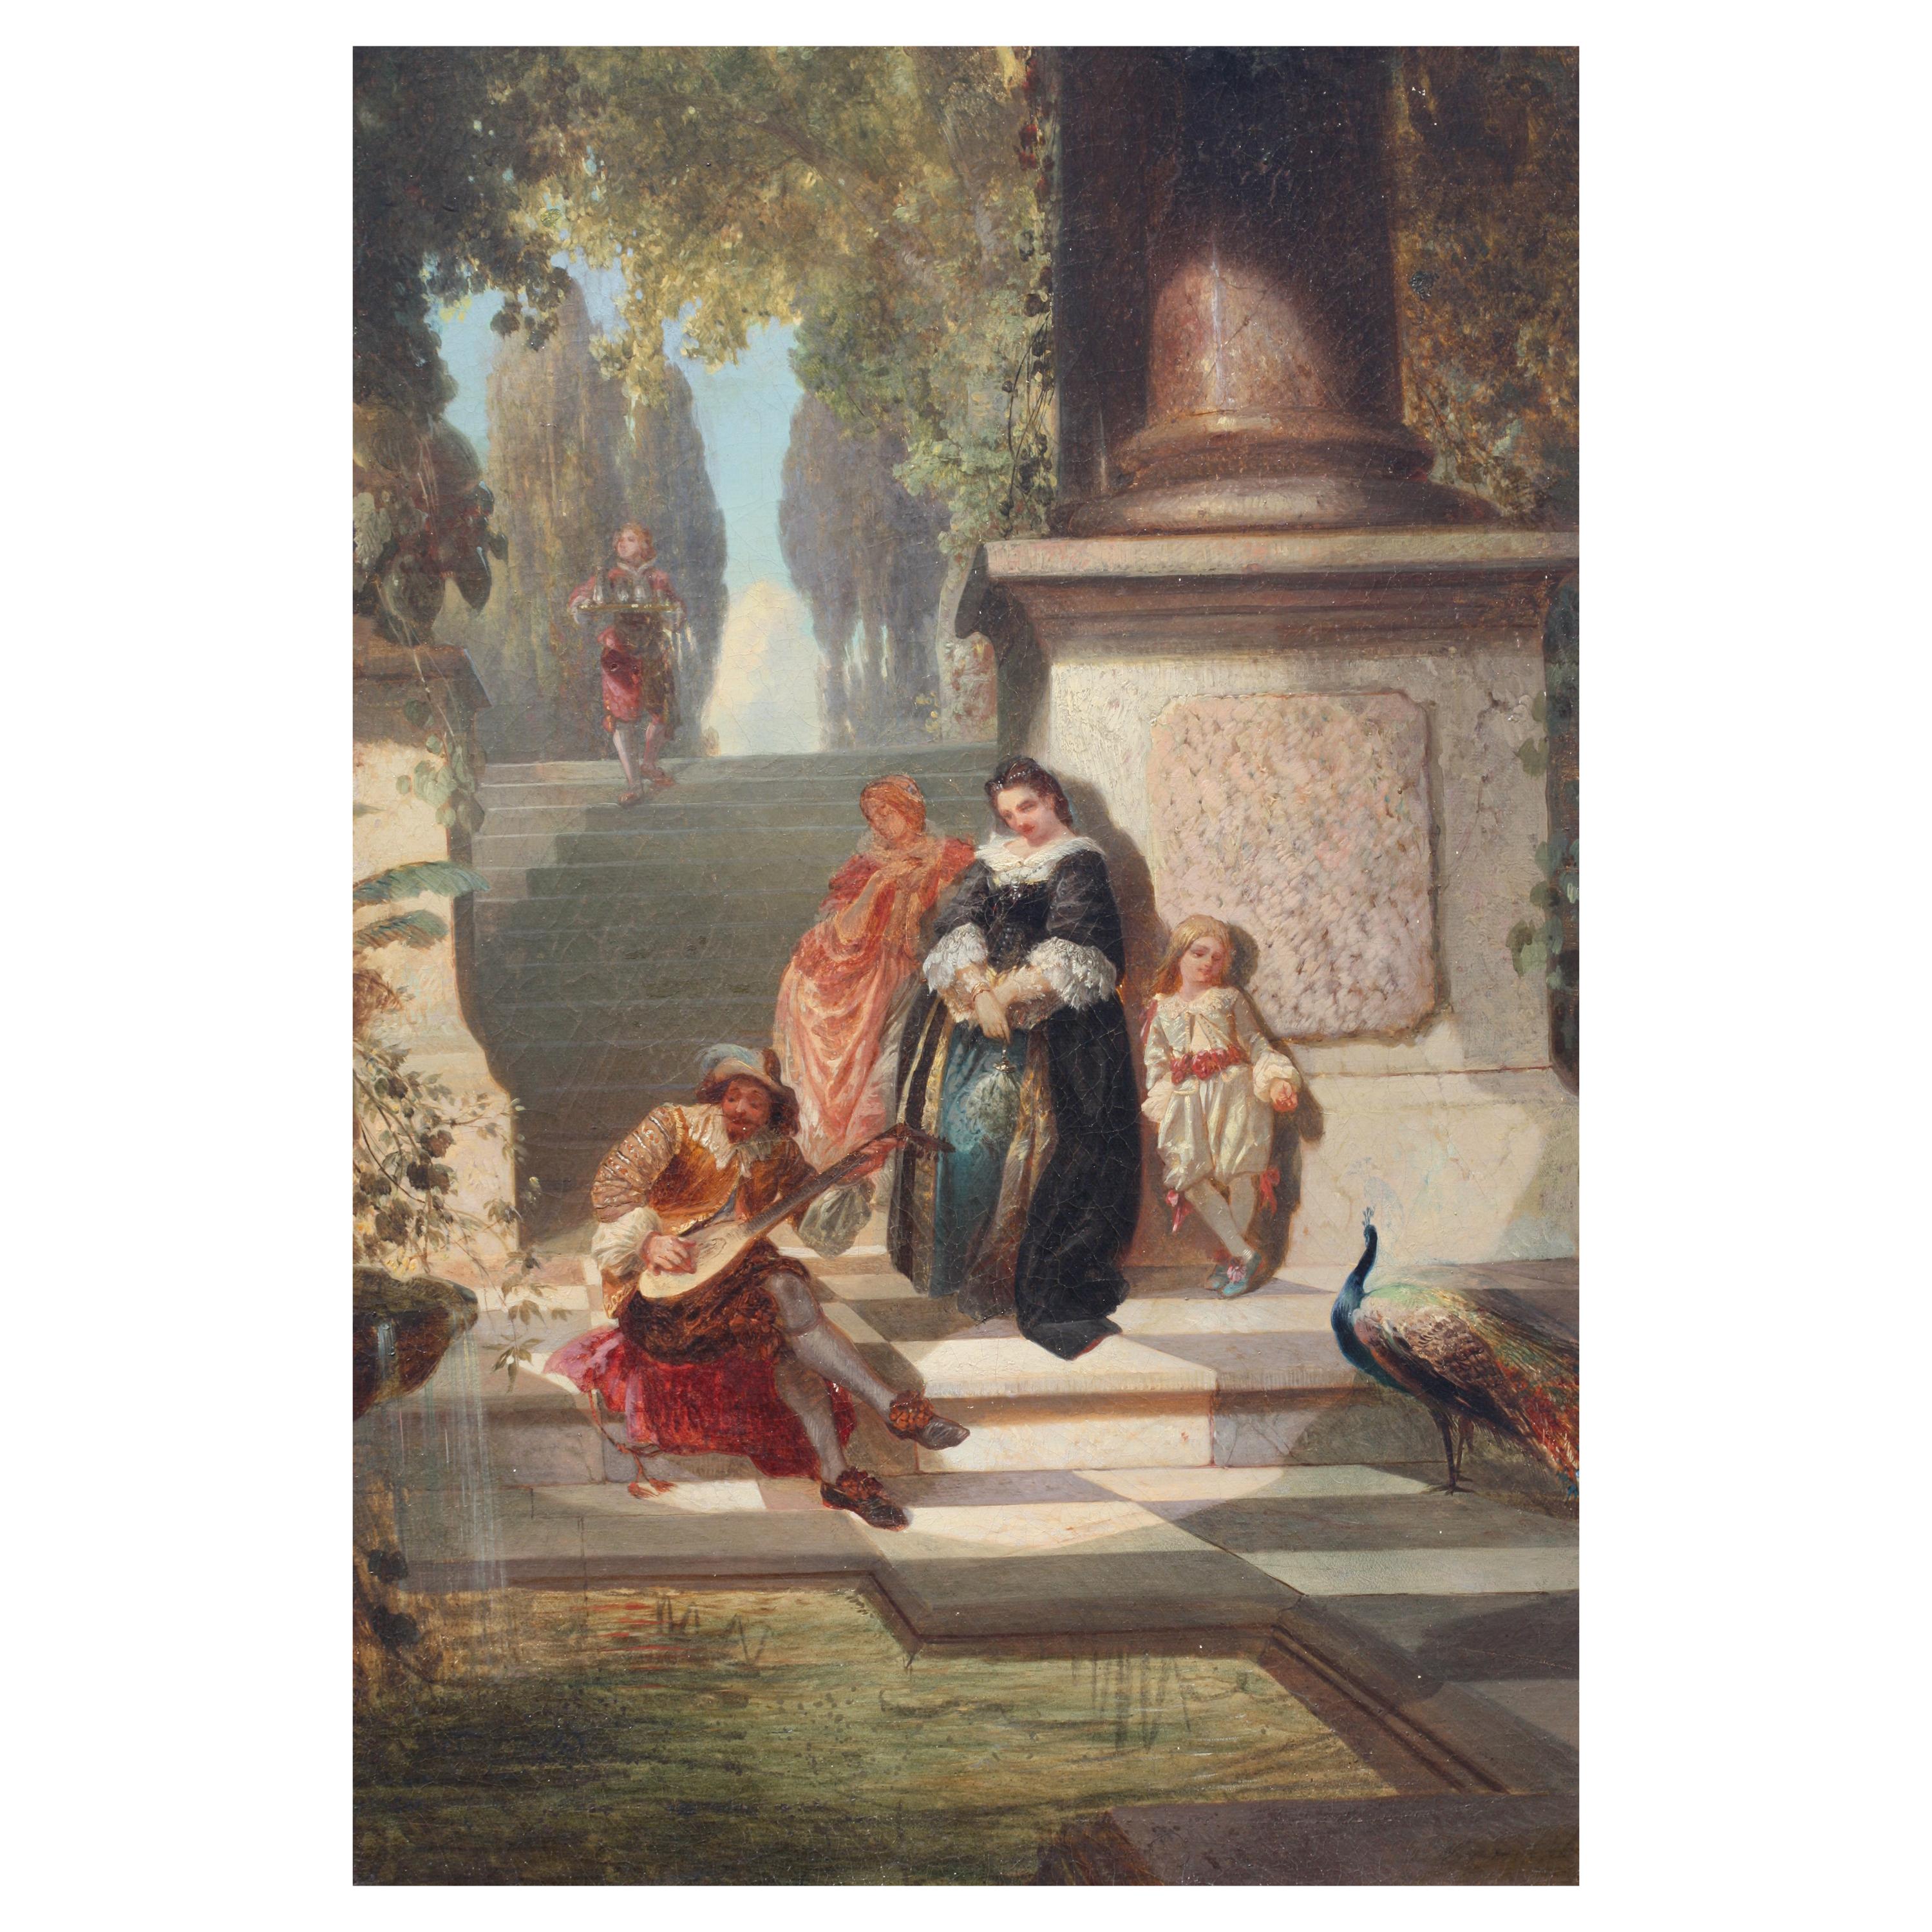 École italienne, après-midi, huile sur toile, XIXe siècle